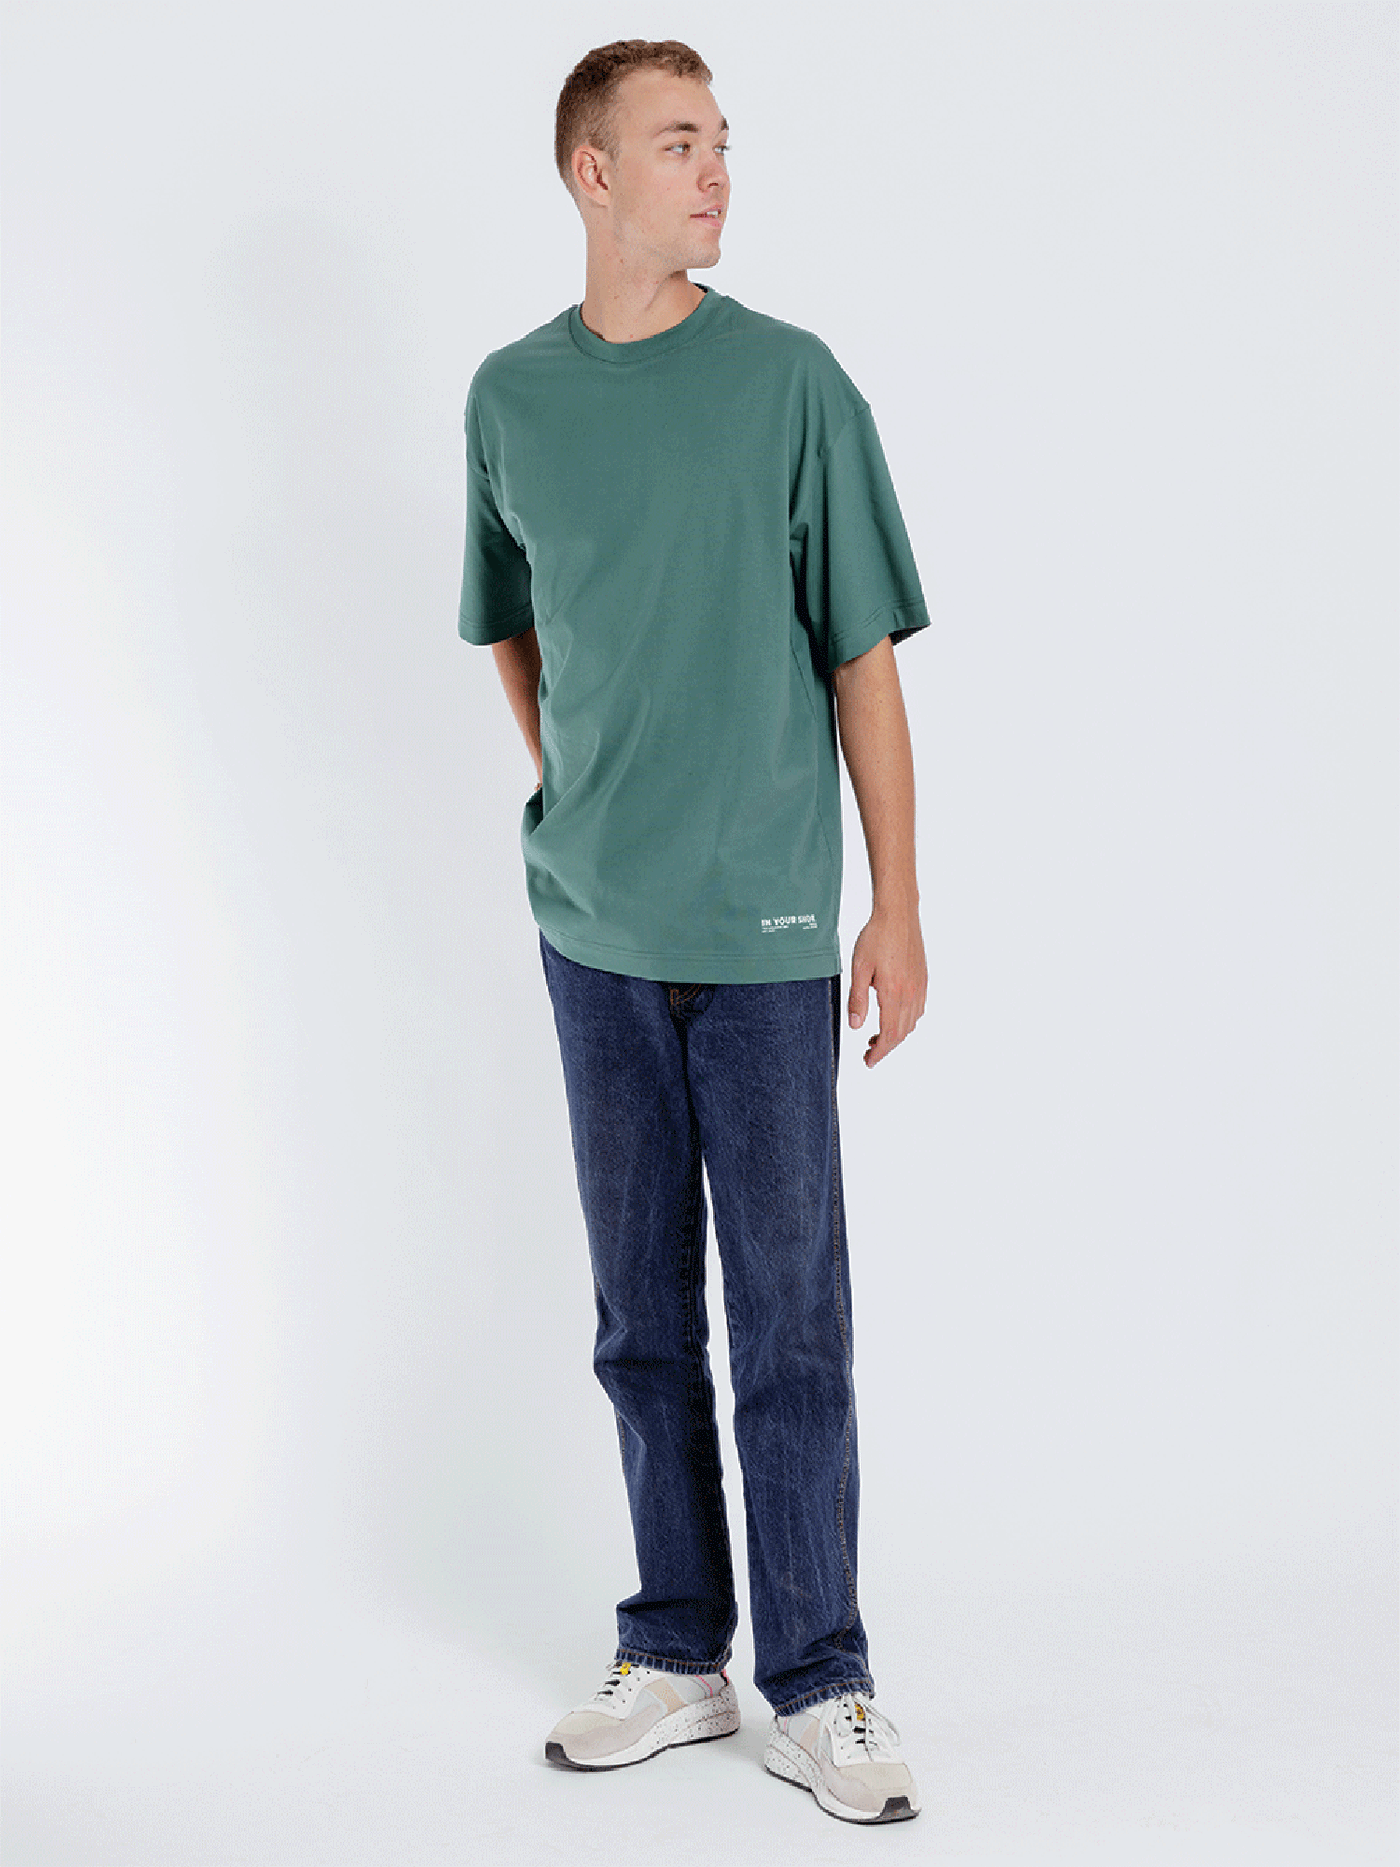 Unisex T-Shirt - Round Neck - Oversized